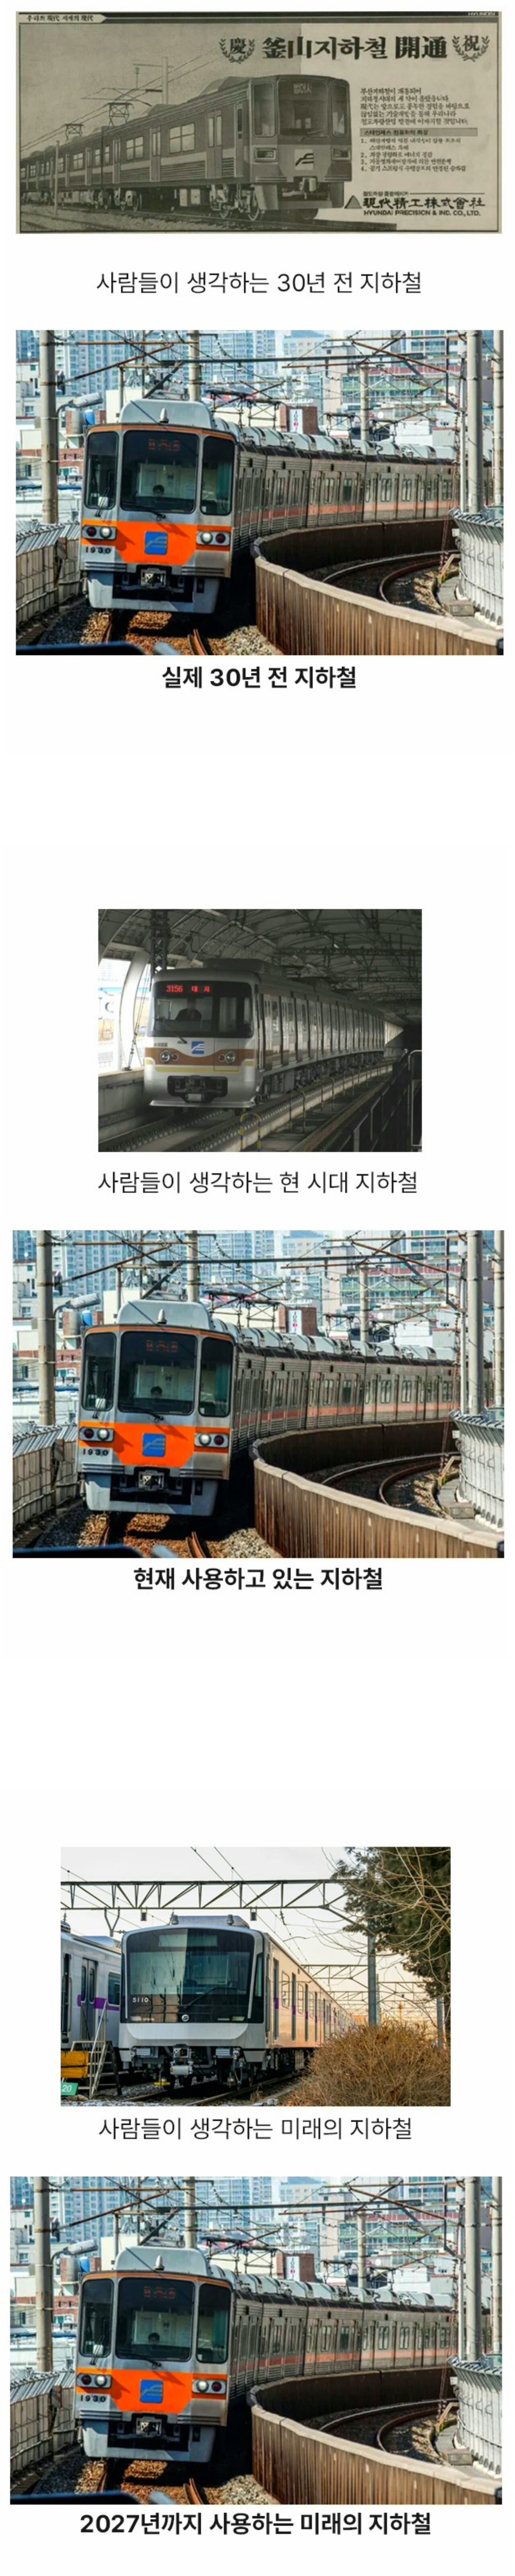 				부산 지하철의 놀라운 역사....jpg